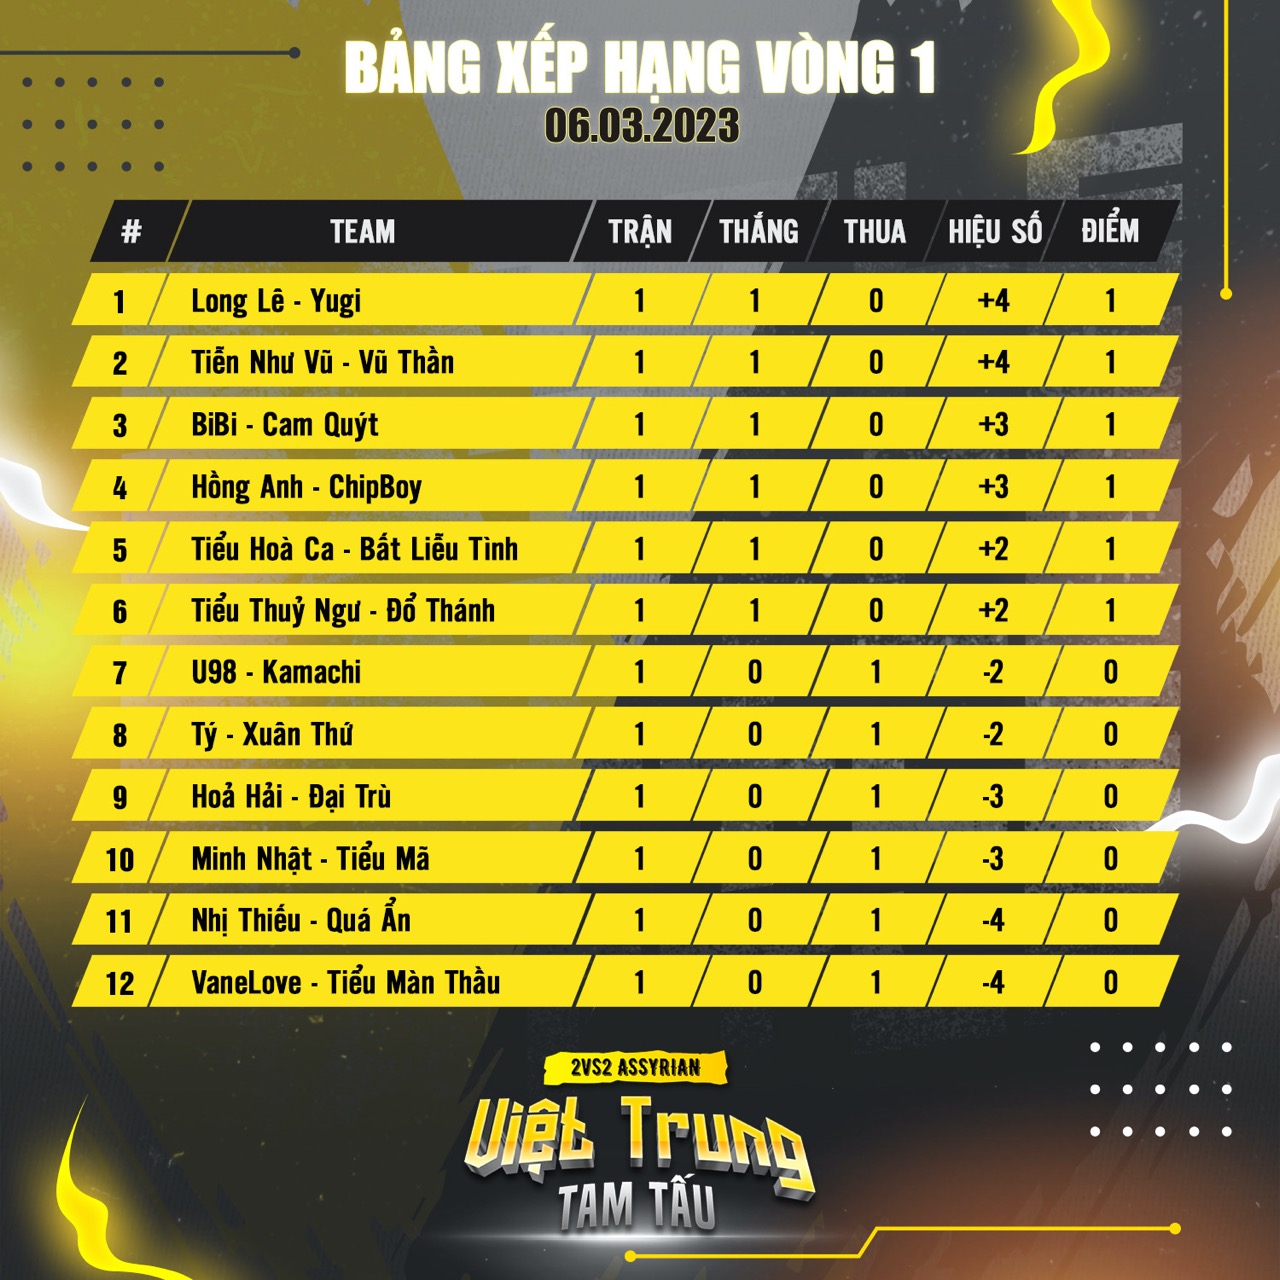 AoE Việt Trung Tam Tấu 2023: Kết quả vòng 1 và lịch thi đấu vòng 2